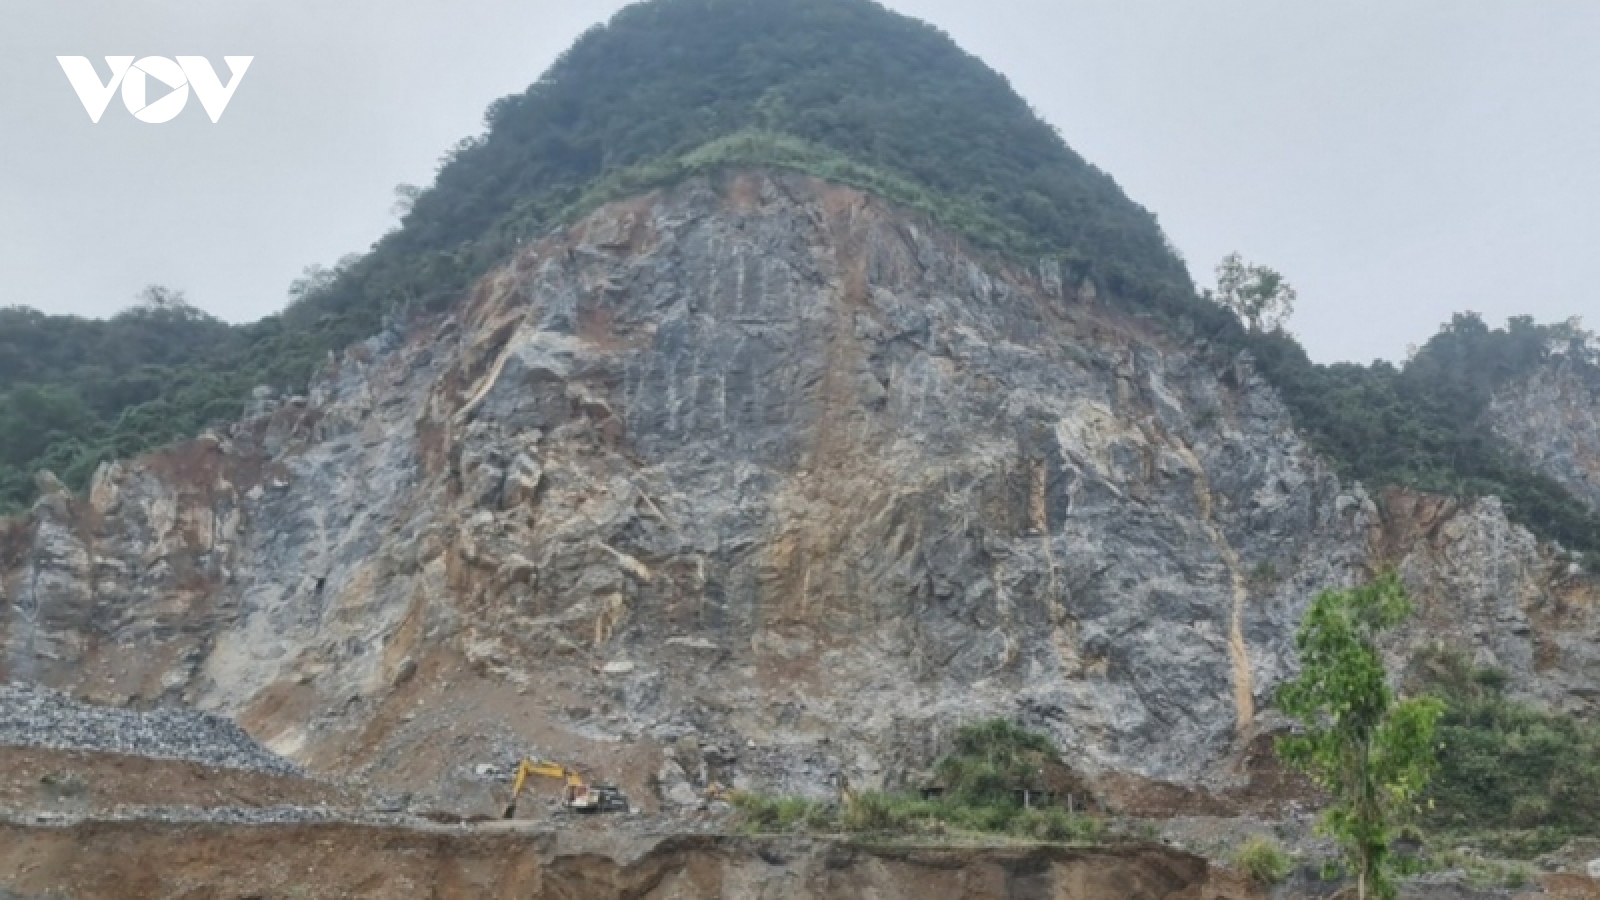 Tai nạn lao động làm chết người tại mỏ đá ở Quảng Bình